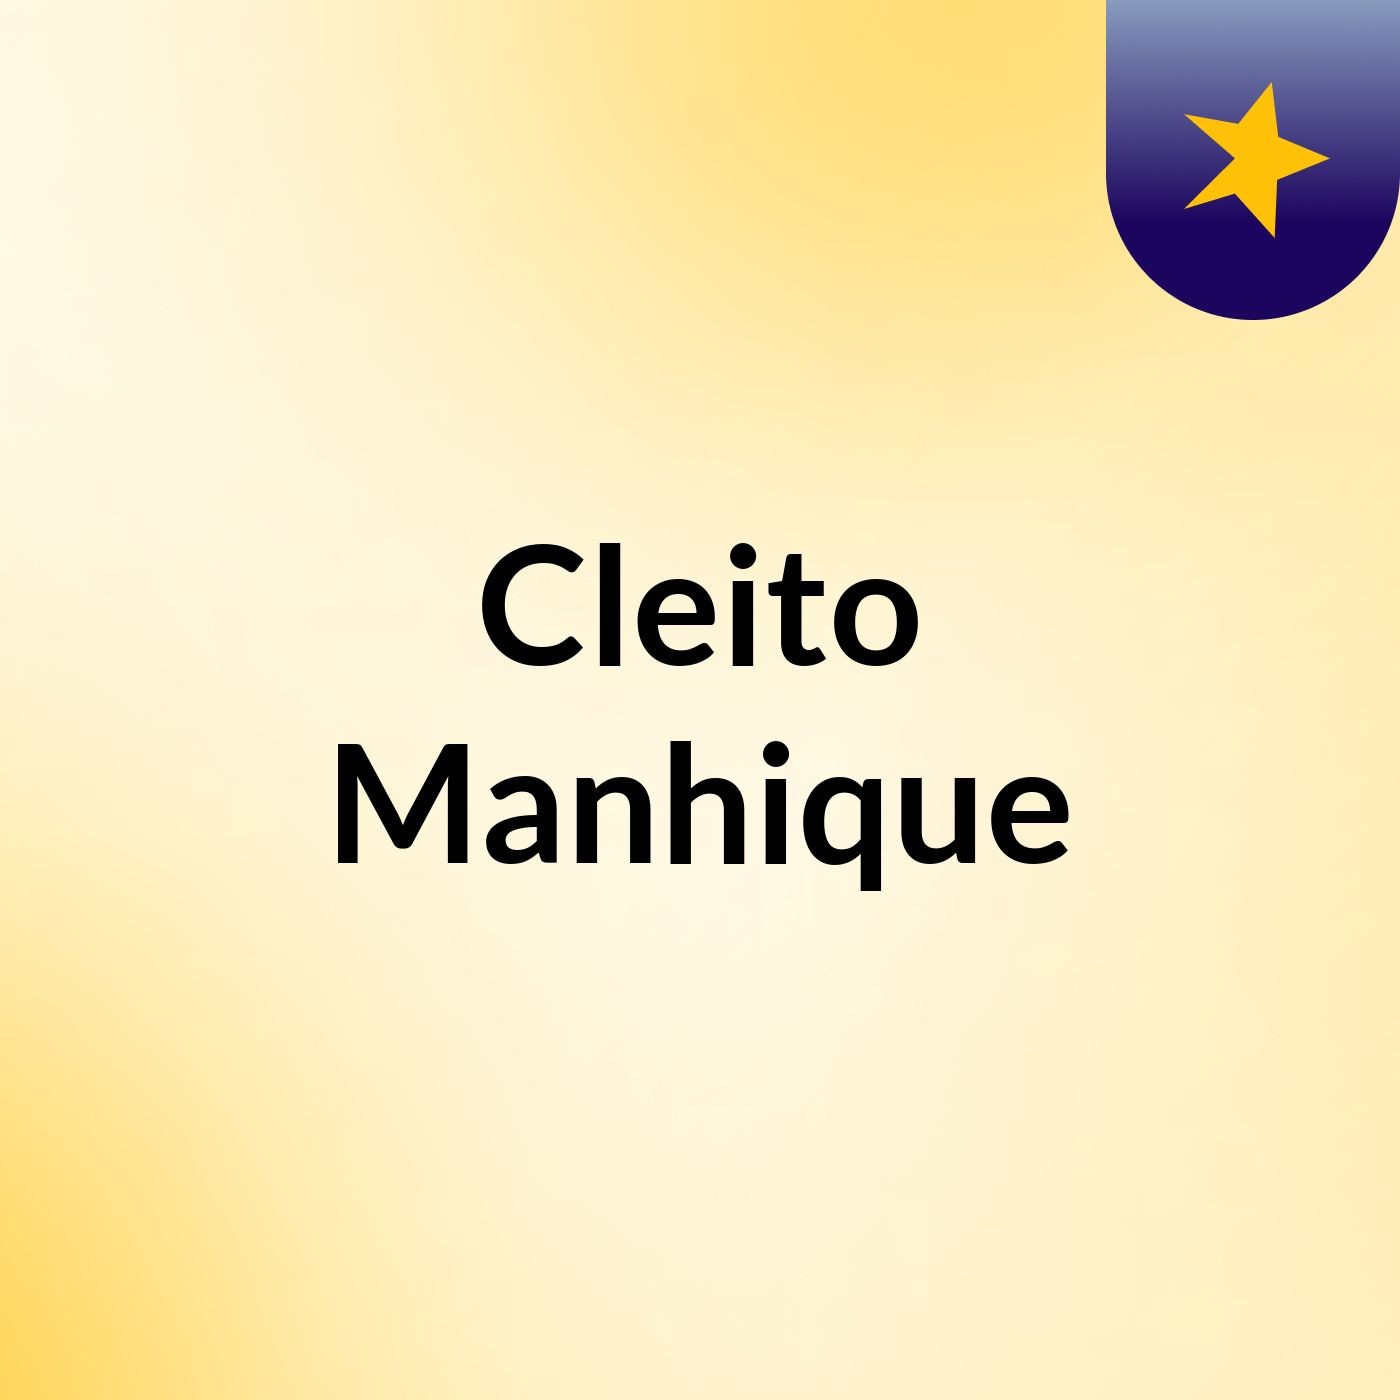 Cleito Manhique